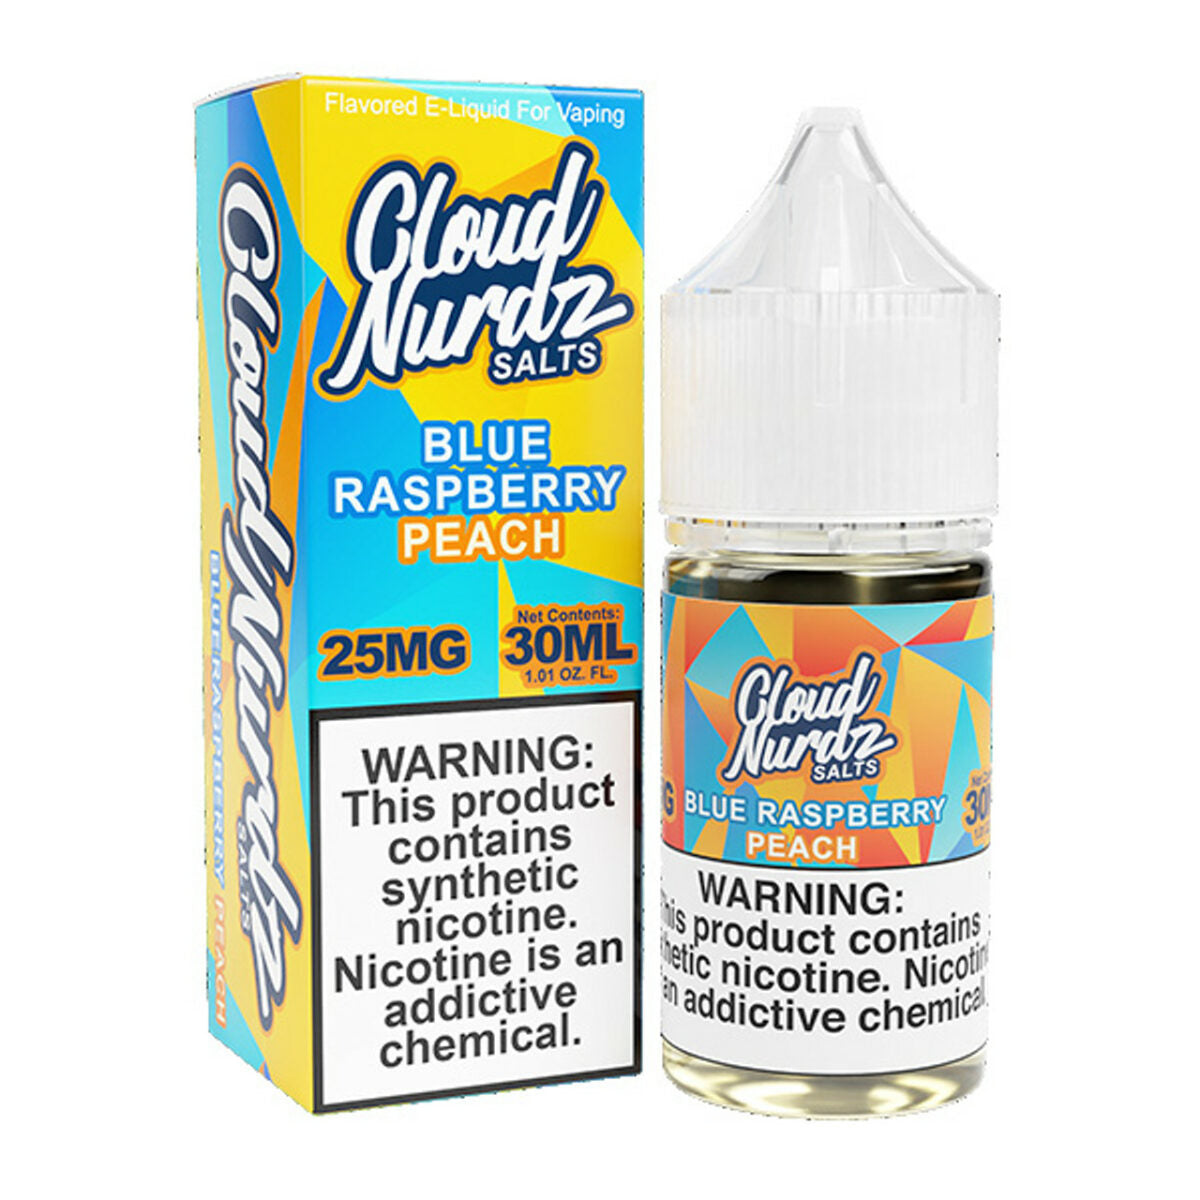 Cloud Nurdz Salt Series E-Liquid 30mL Peach Blue Raspberry with packaging